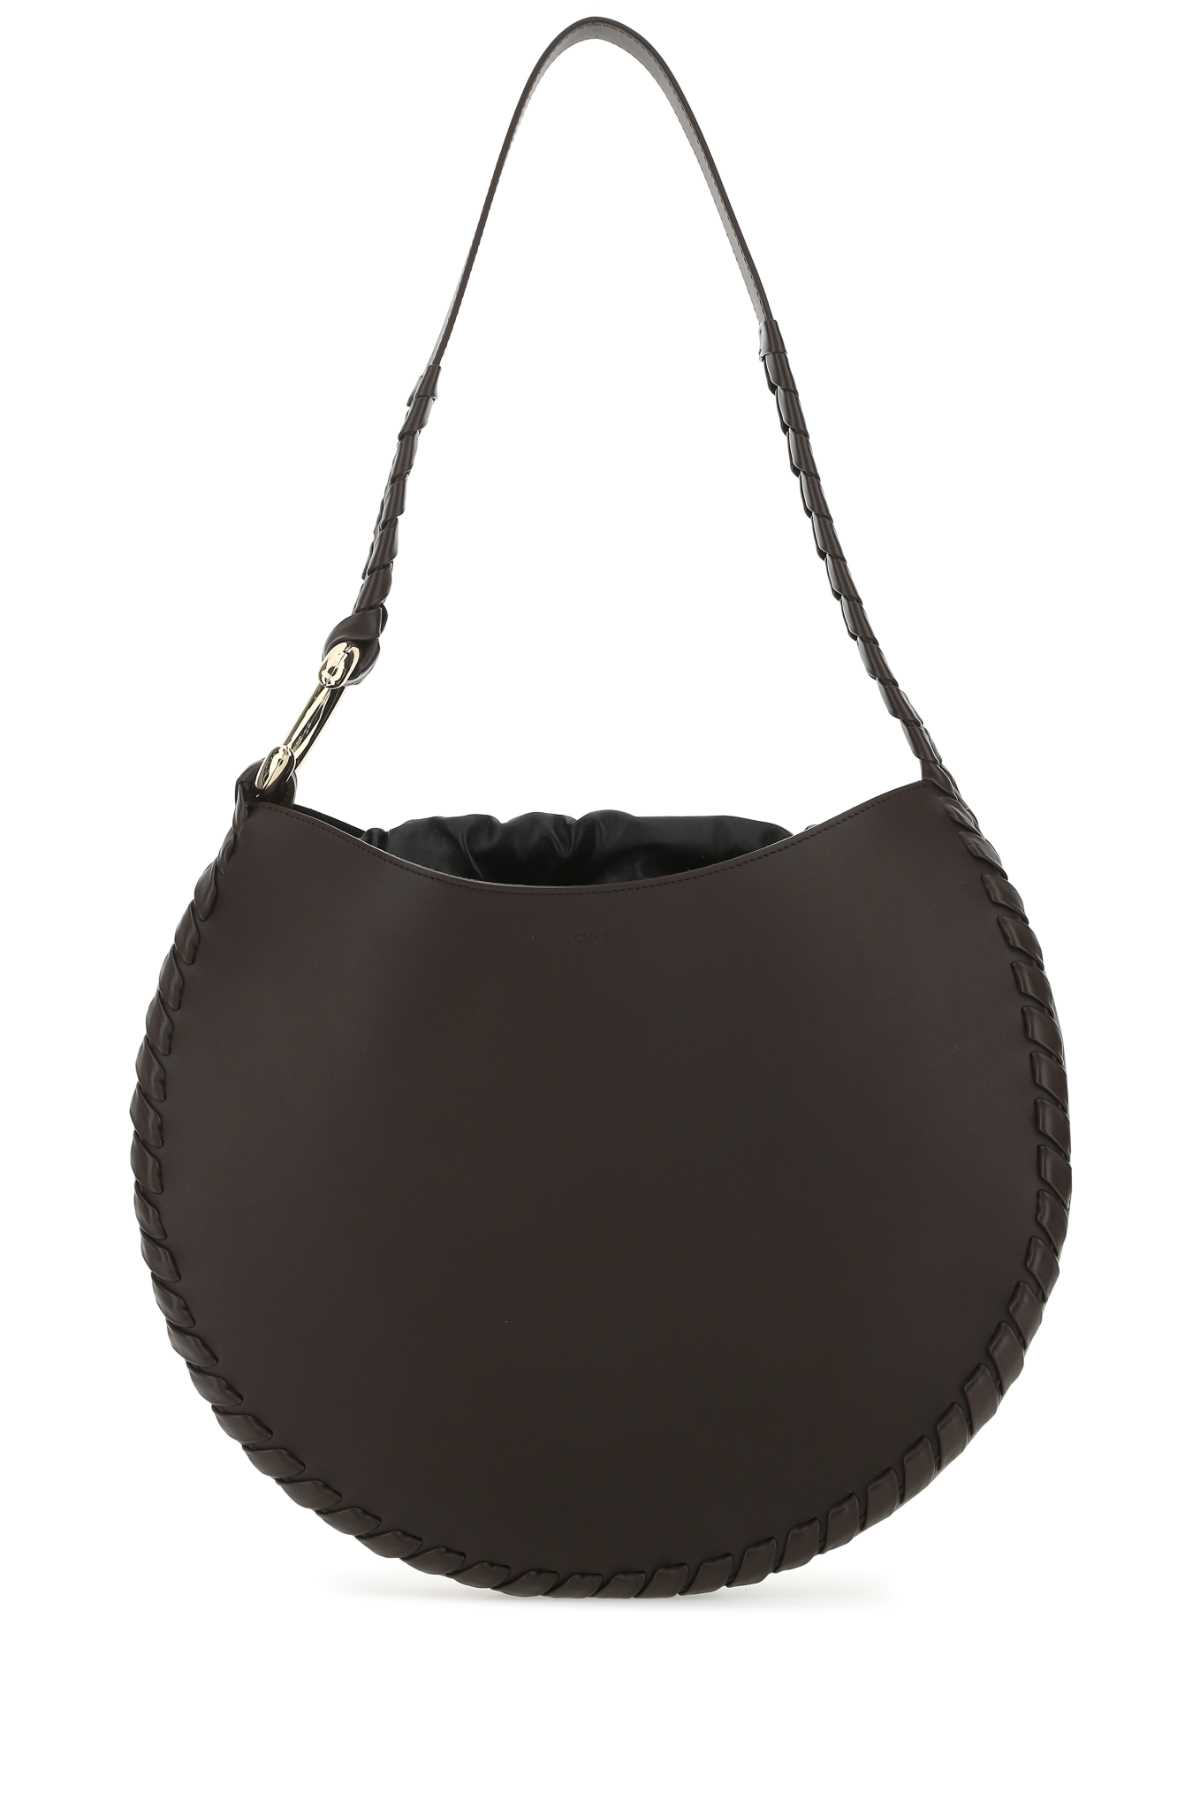 Chloé Dark Brown Leather Large Mate Shoulder Bag